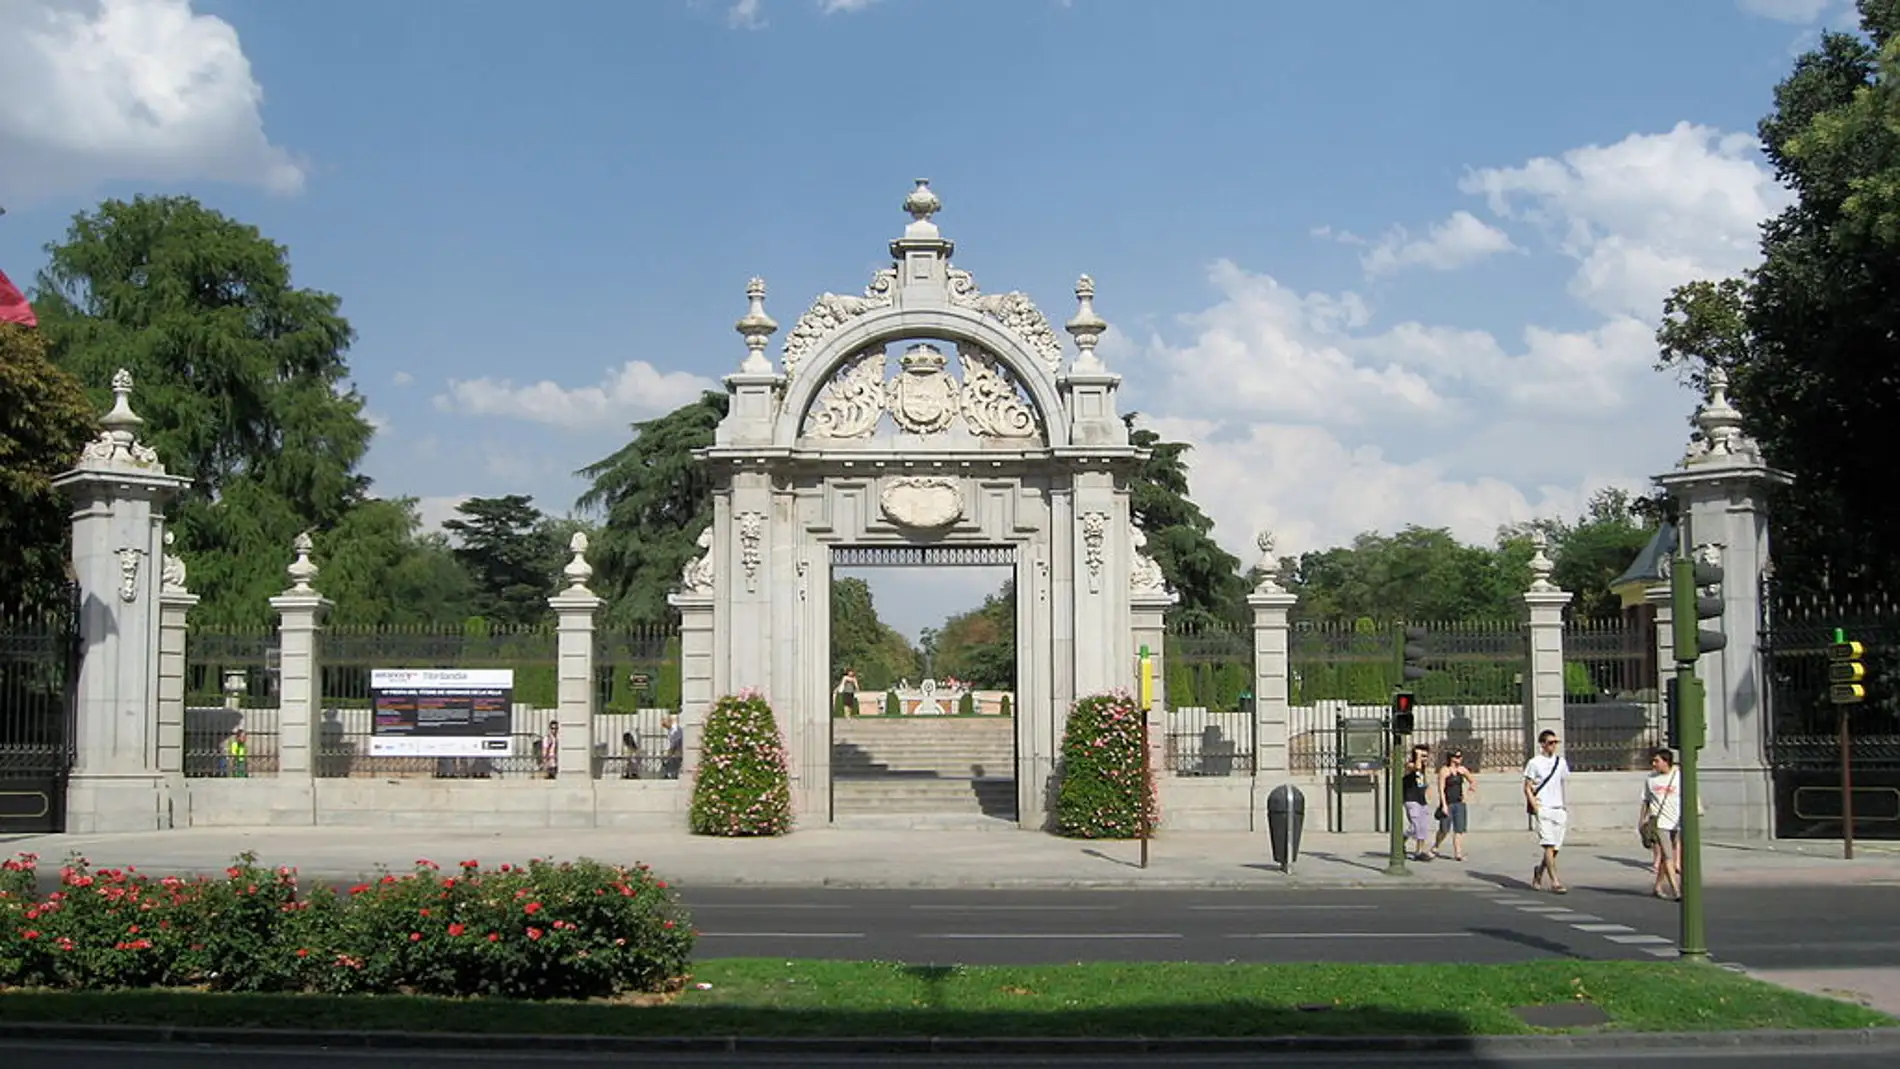 Puerta de Felipe IV del Retiro: historia y datos curiosos de este monumento